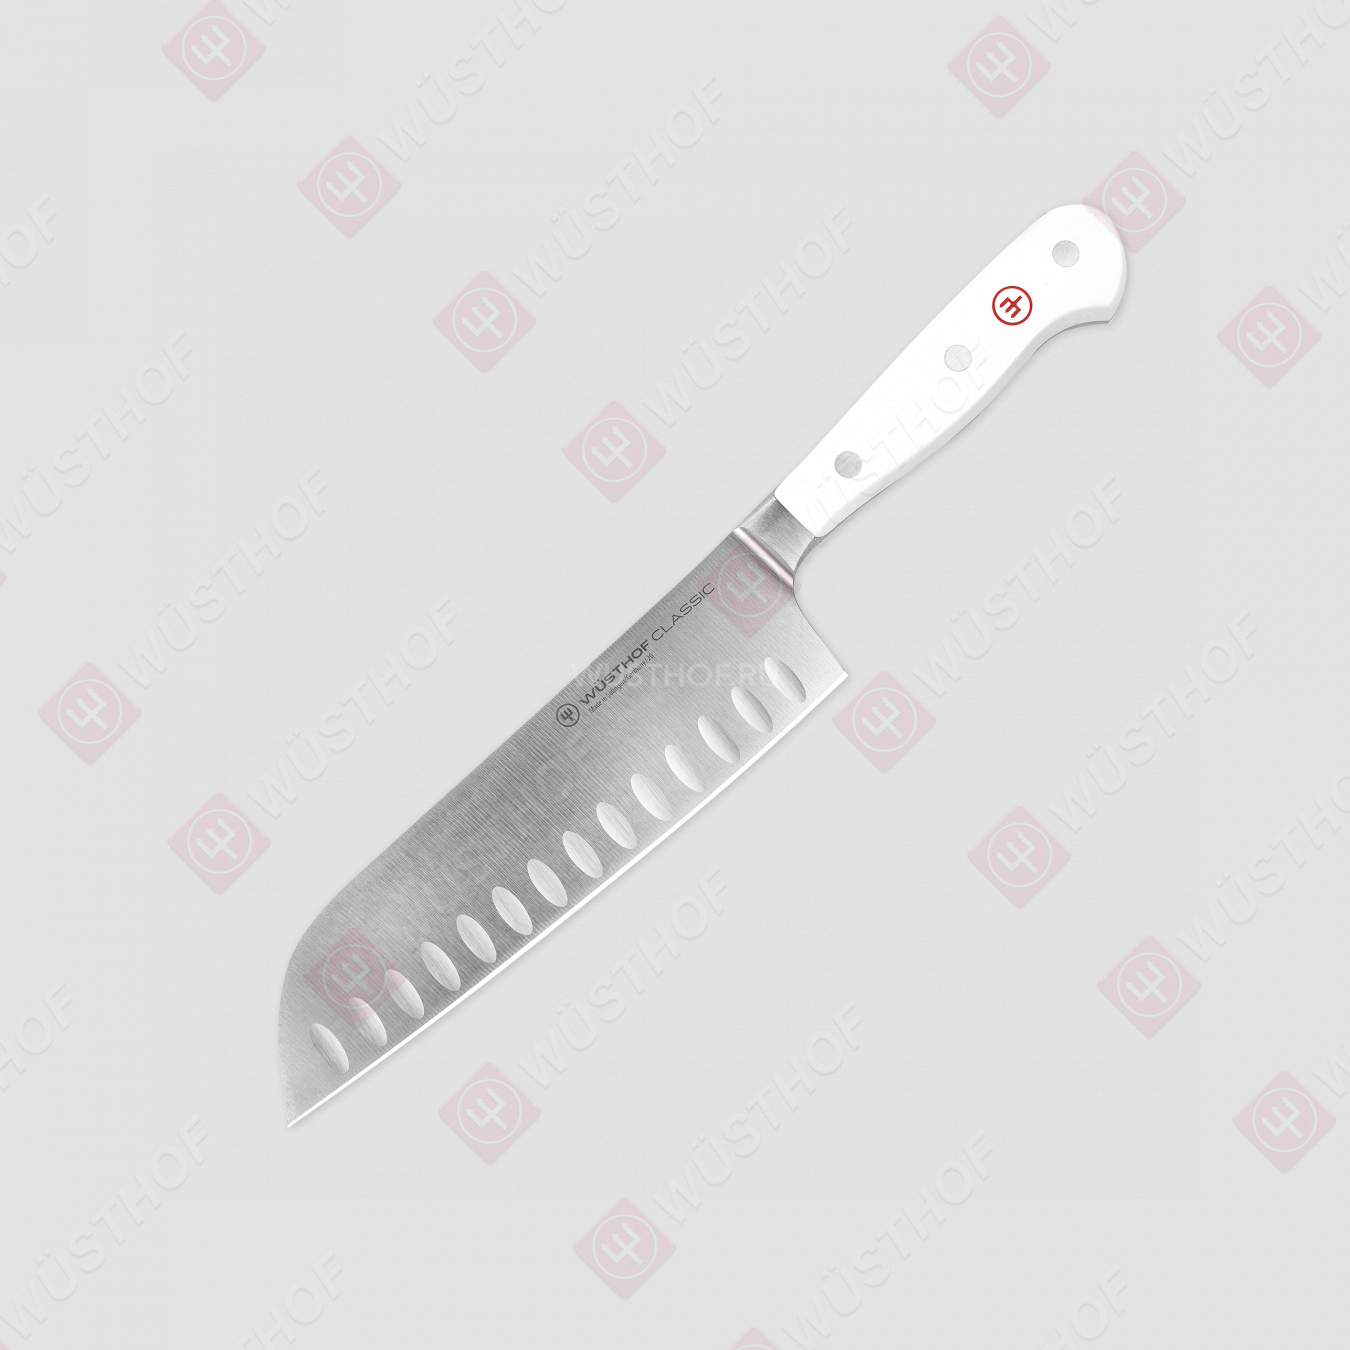 Нож кухонный Сантоку 17 см, с углублениями на кромке, серия White Classic, WUESTHOF, Золинген, Германия